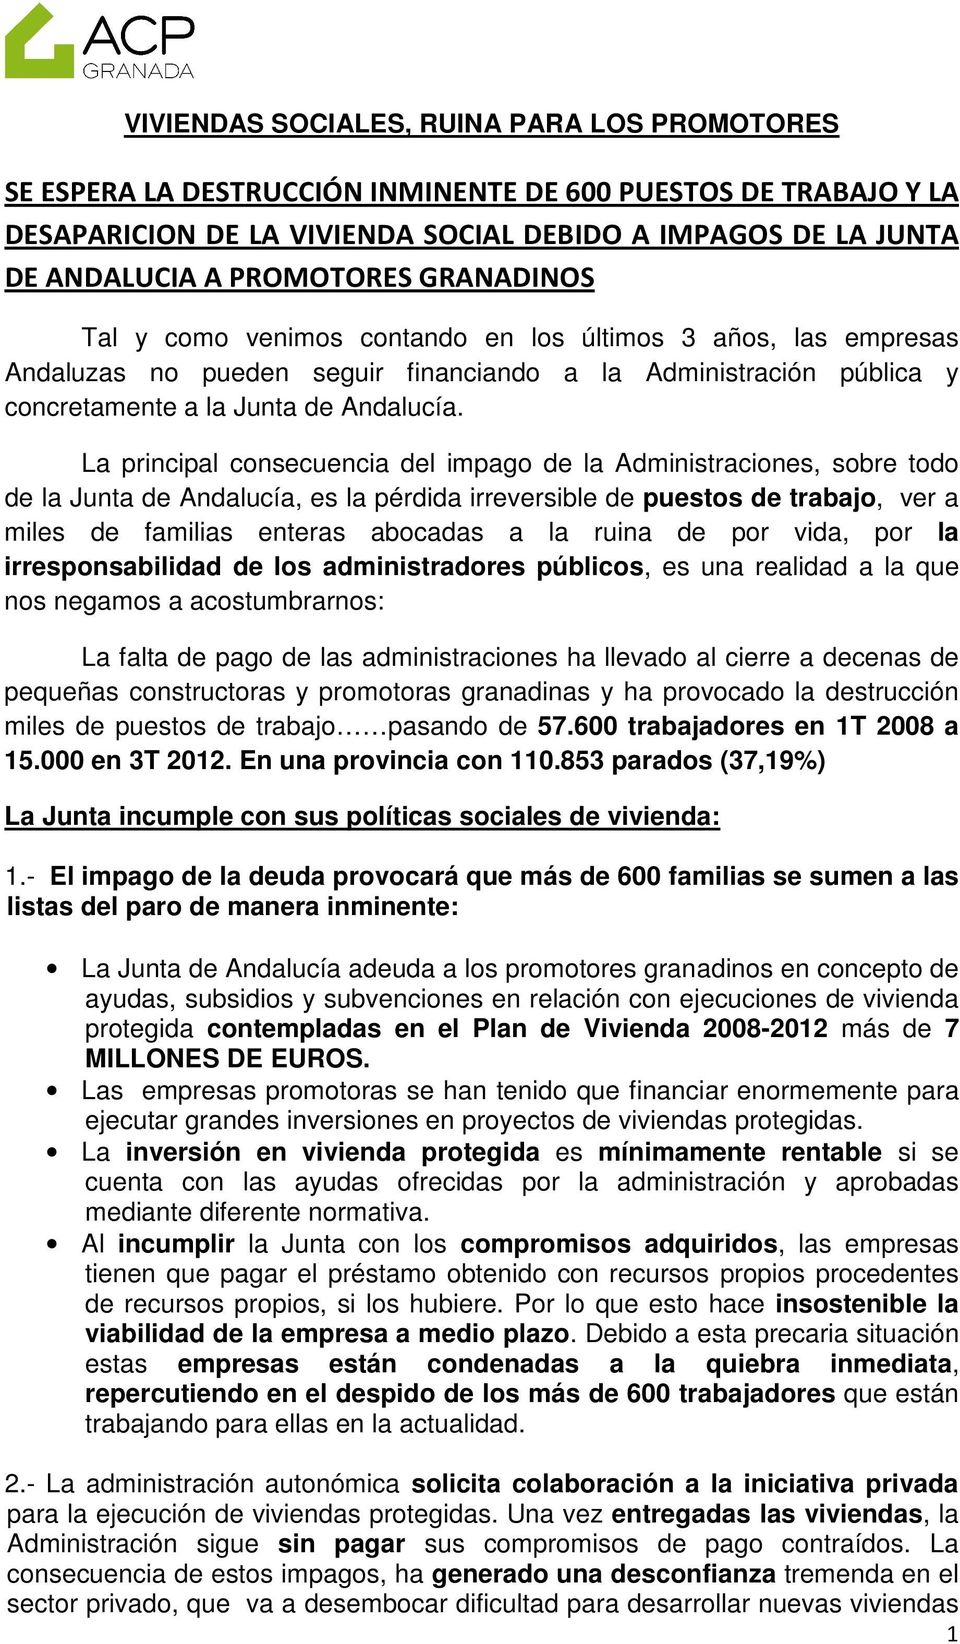 La principal consecuencia del impago de la Administraciones, sobre todo de la Junta de Andalucía, es la pérdida irreversible de puestos de trabajo, ver a miles de familias enteras abocadas a la ruina